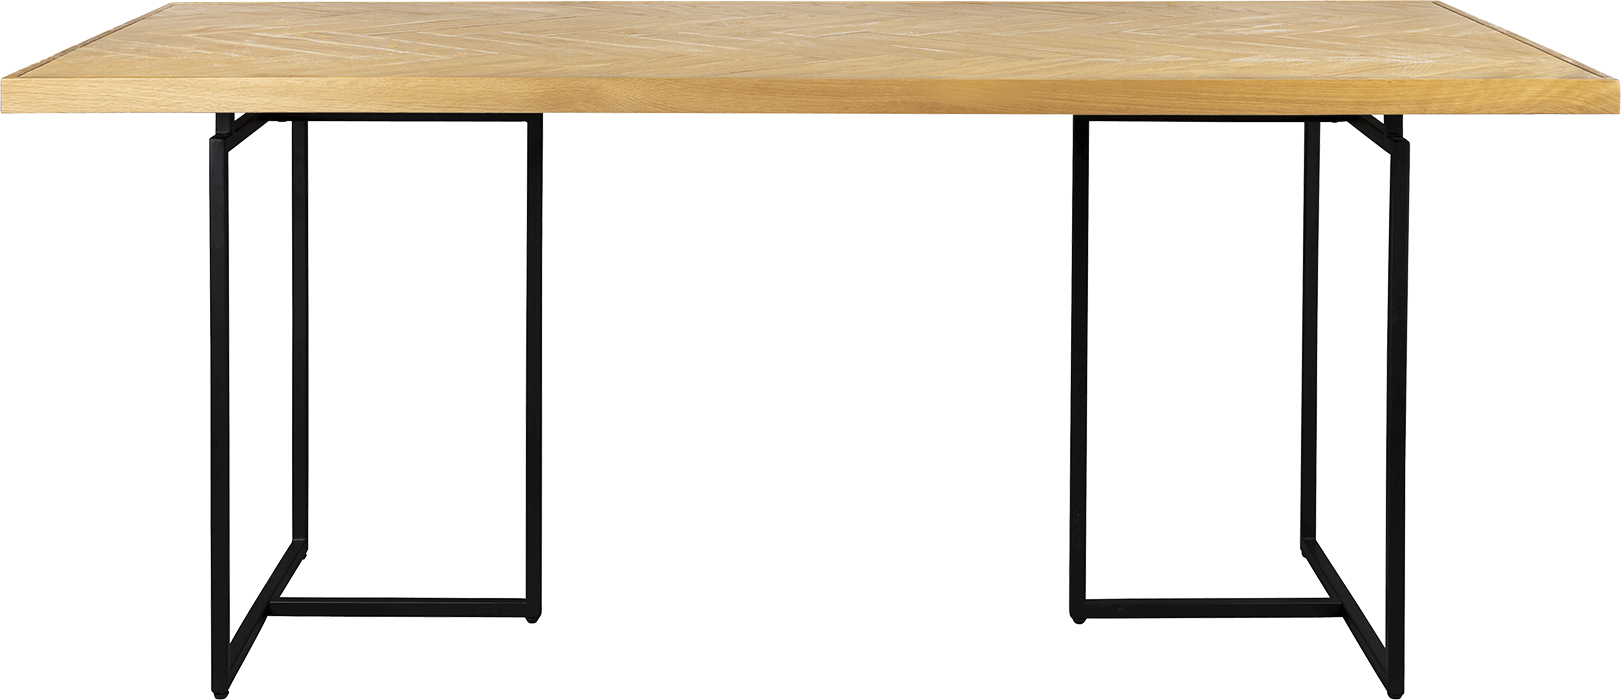 Dutchbone Class jedálenský stôl - Svetlé drevo, 220 x 90 cm